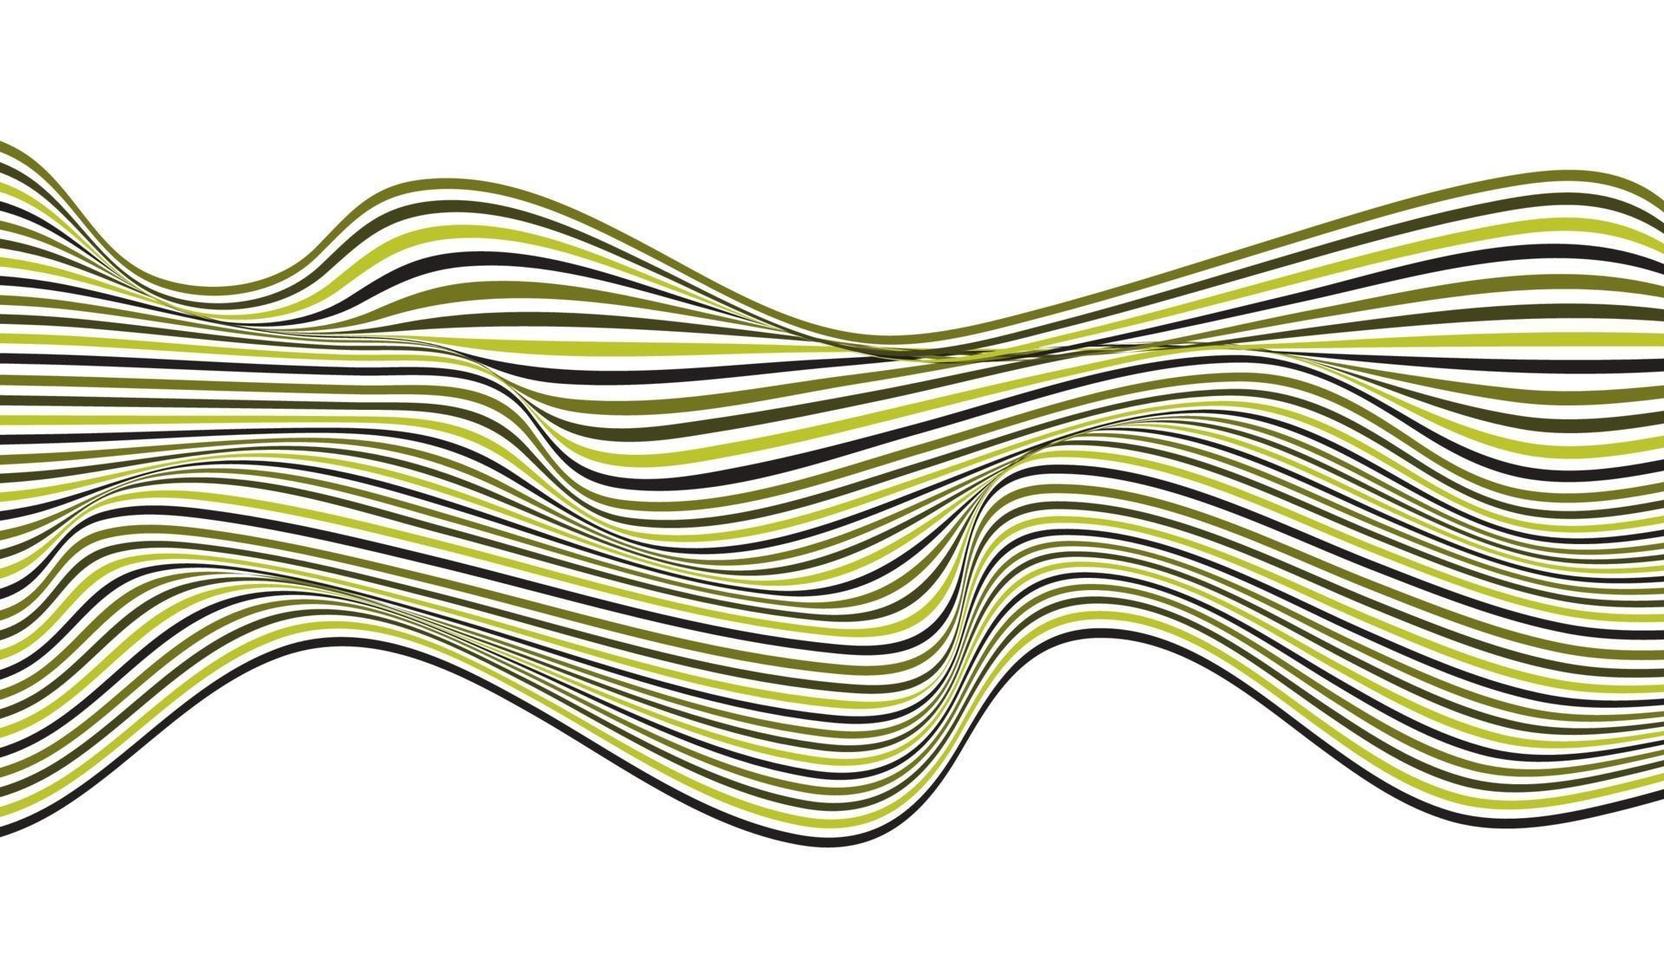 disegno astratto di arte ottica del modello delle linee dell'onda verde isolato su fondo bianco vettore